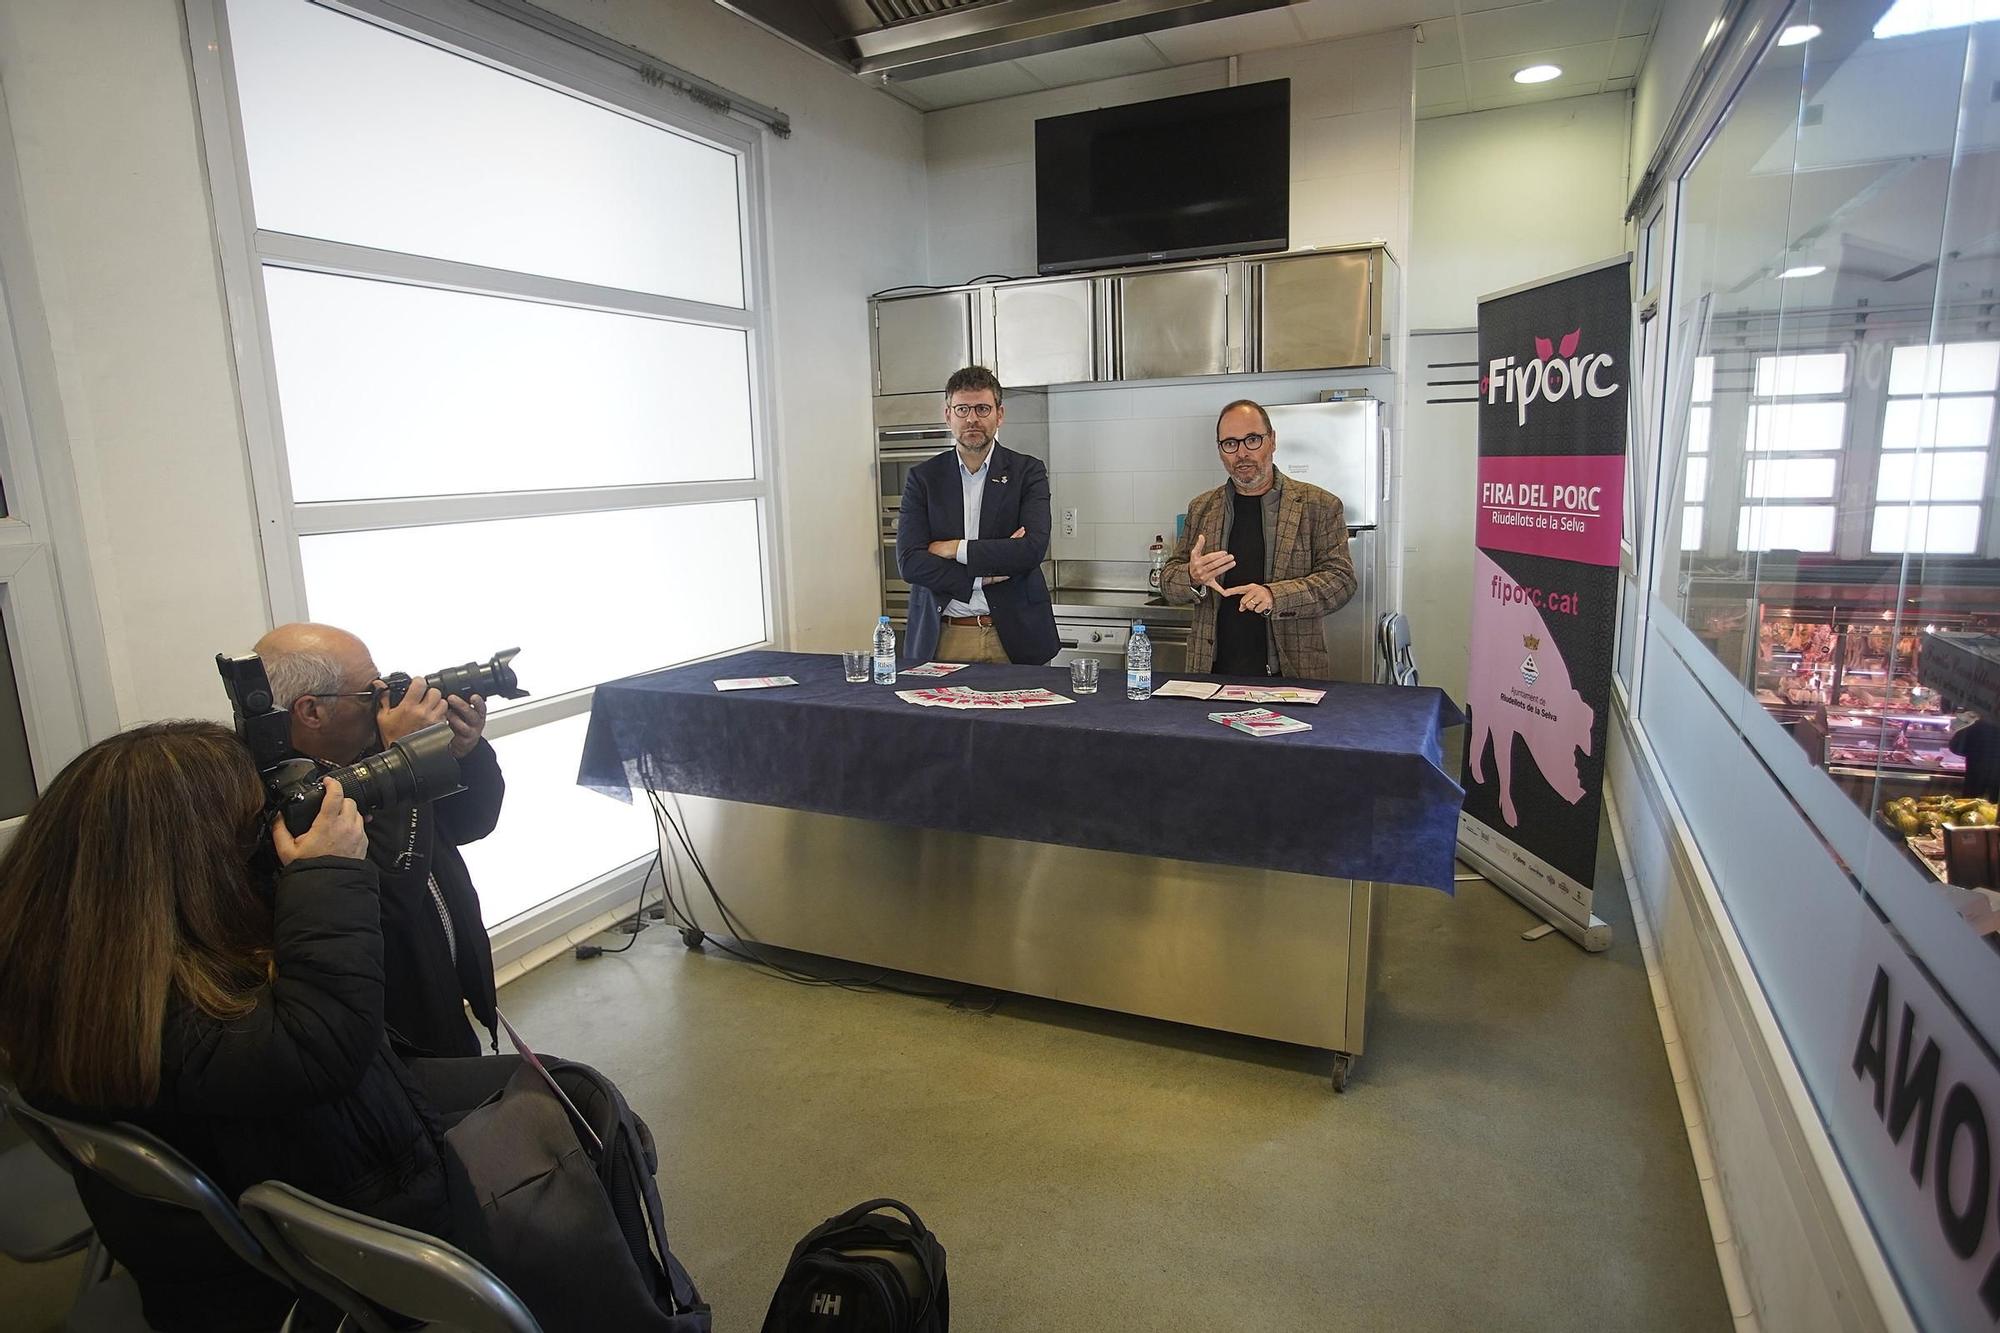 Presentació de FIPORC al Mercat del Lleó, a Girona.